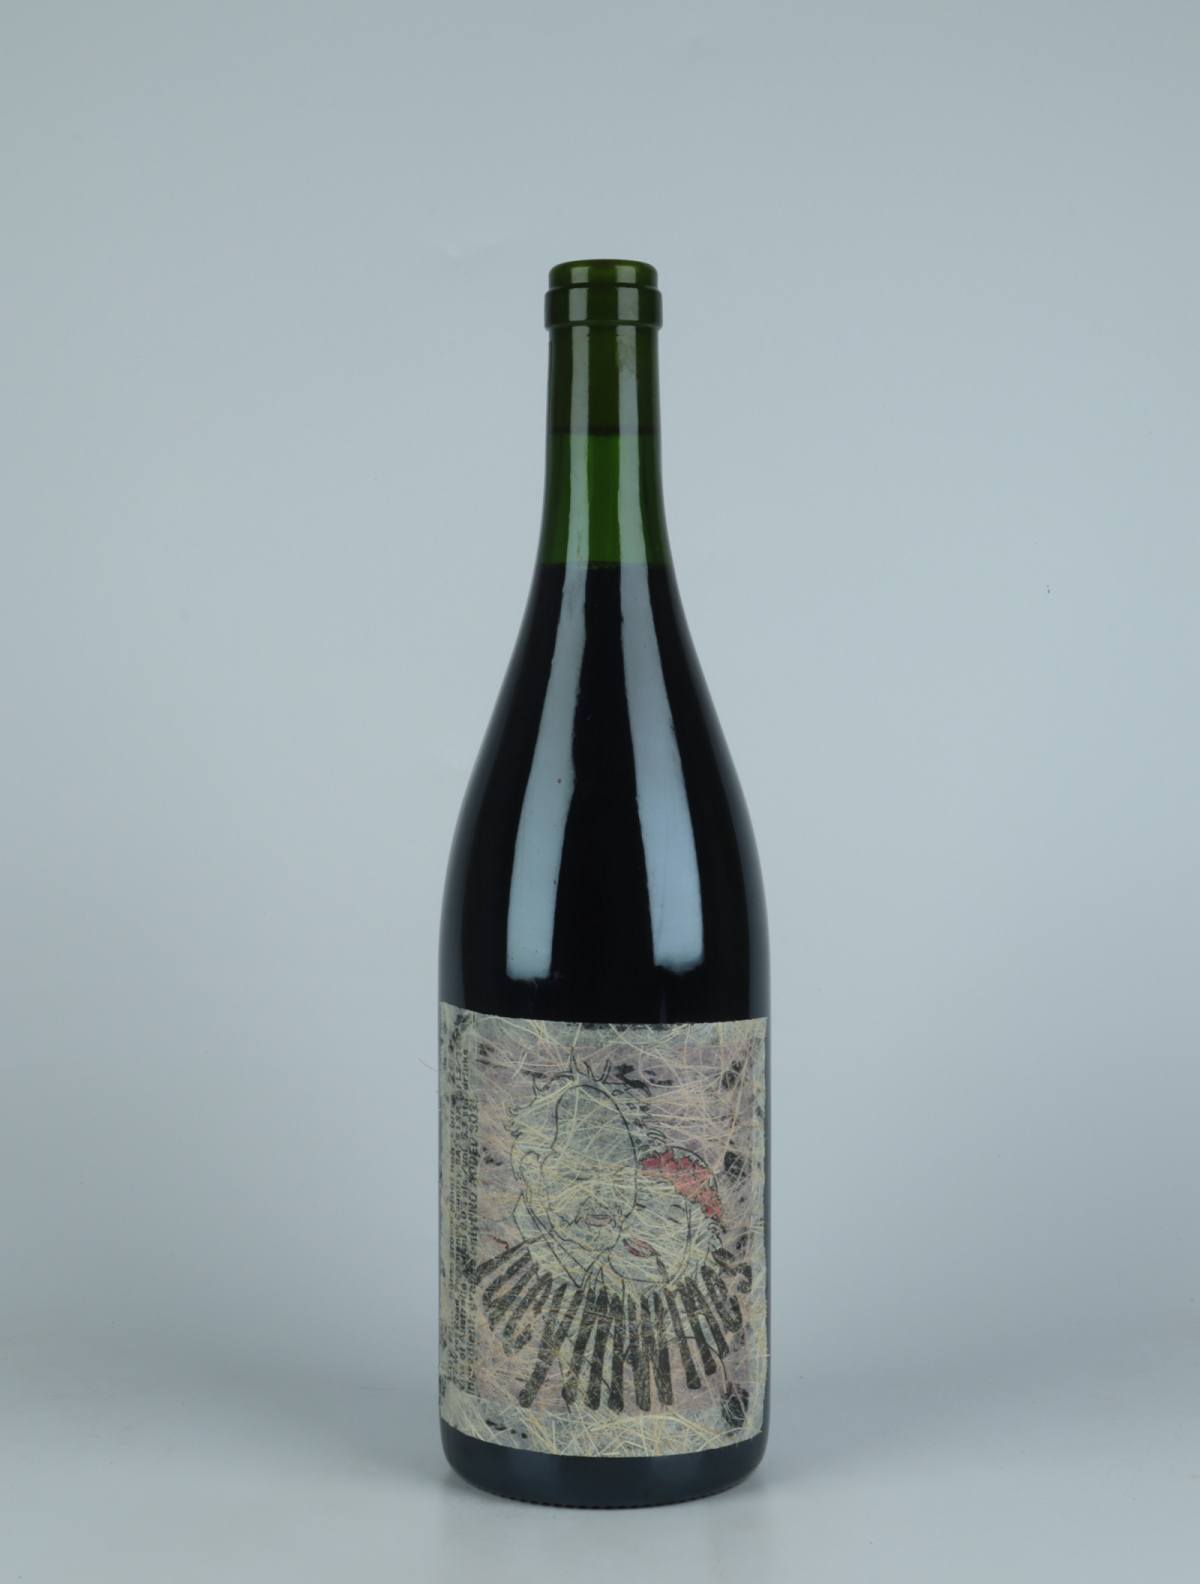 En flaske 2022 Home Grown Pinot Noir Rødvin fra Lucy Margaux, Adelaide Hills i Australien